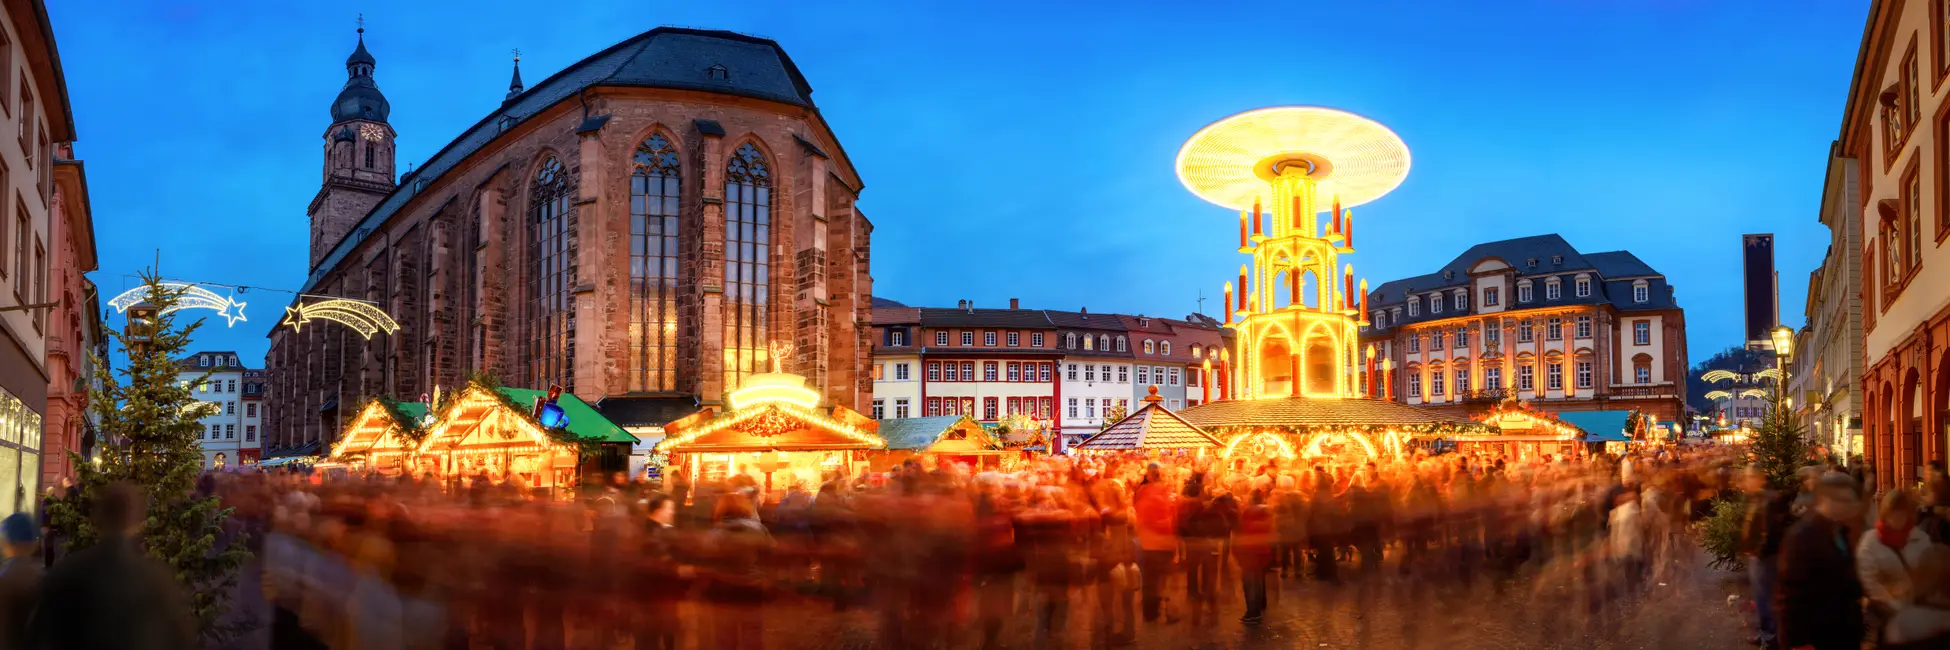 Sous les lumières du marché de Noël de Heidelberg